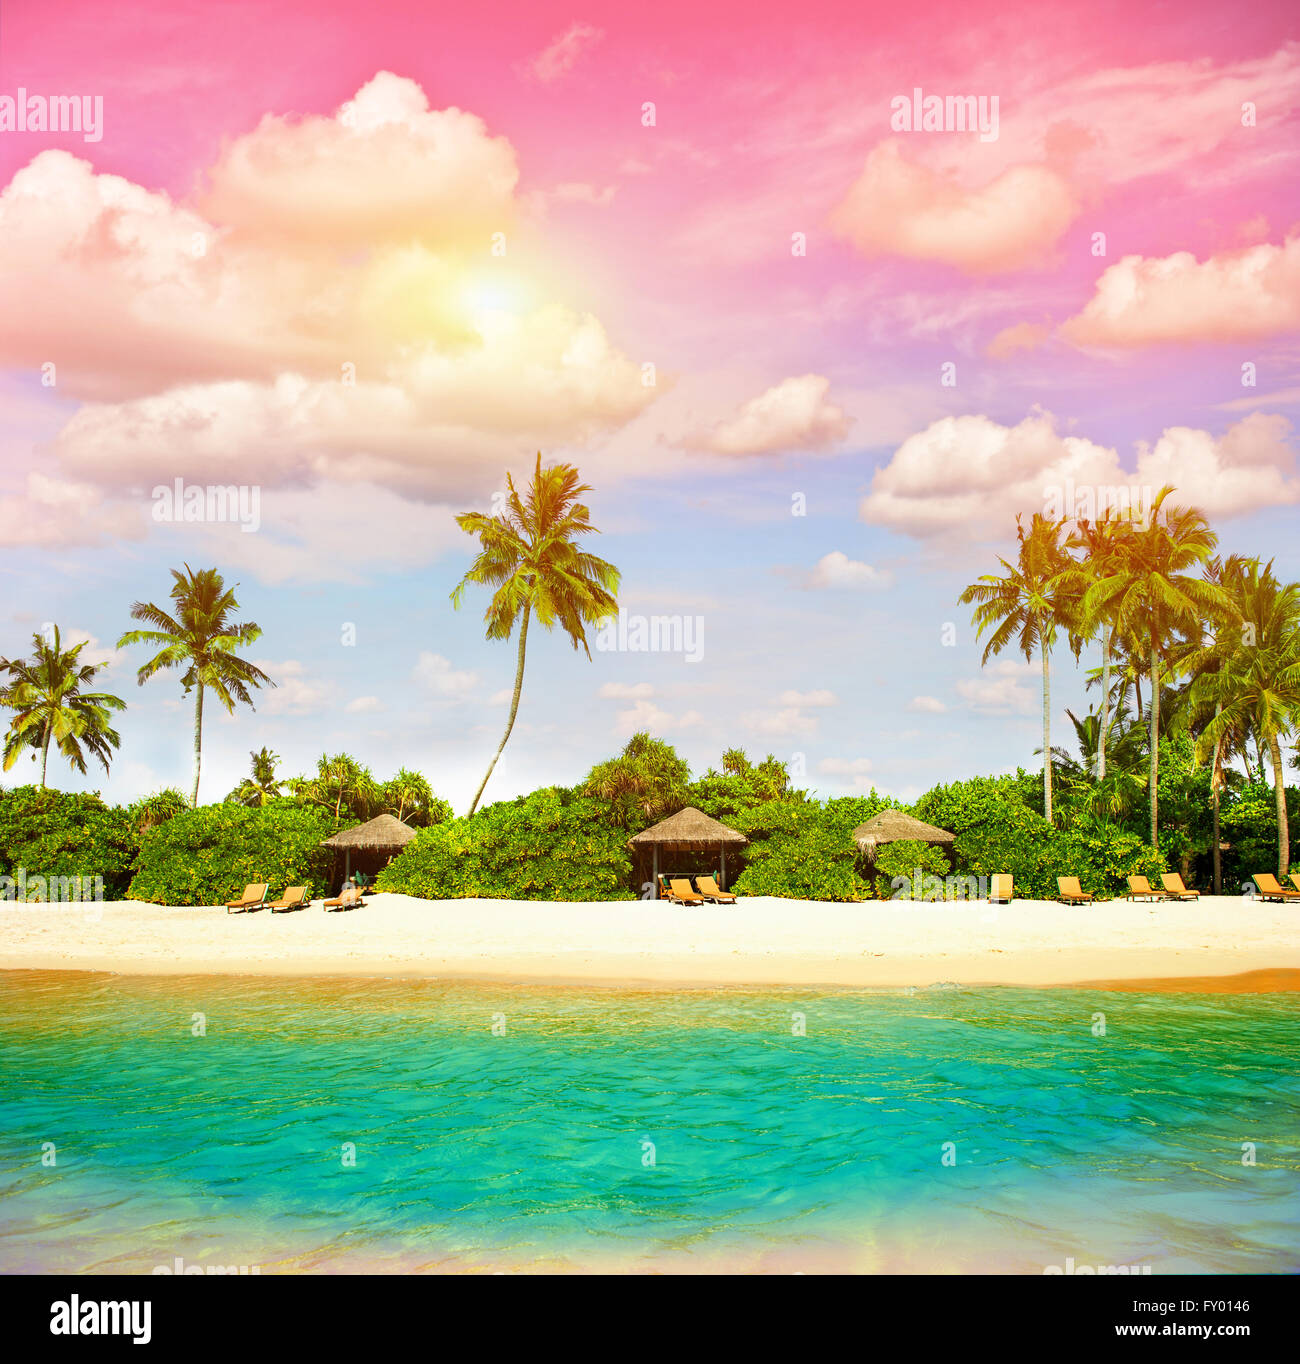 Plage tropicale avec Ciel de coucher du soleil. Paradise Island avec palmiers. Photo couleur style vintage Banque D'Images